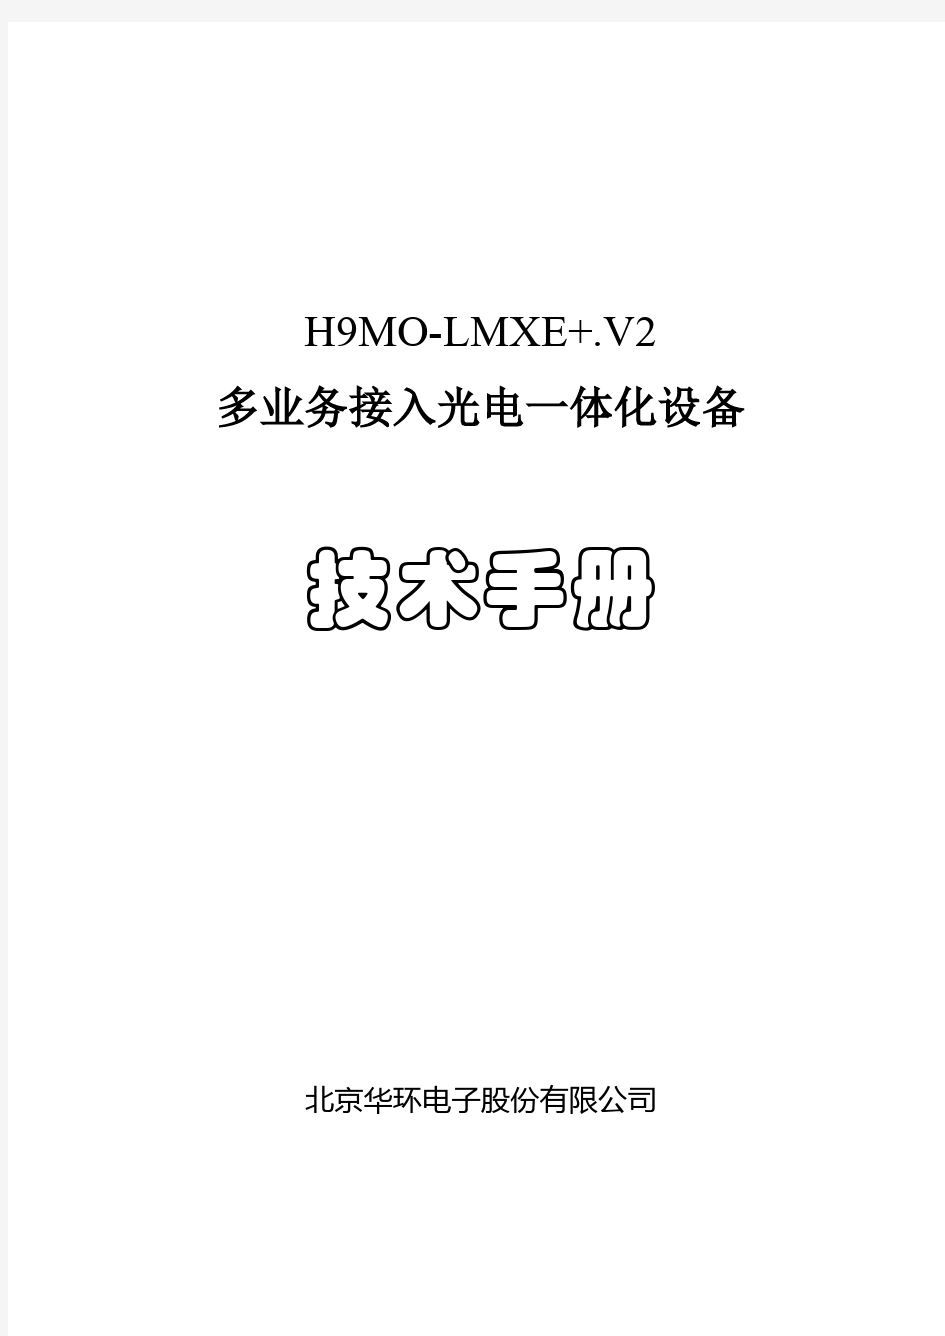 华环H9MO-LMXE+.V2设备技术手册